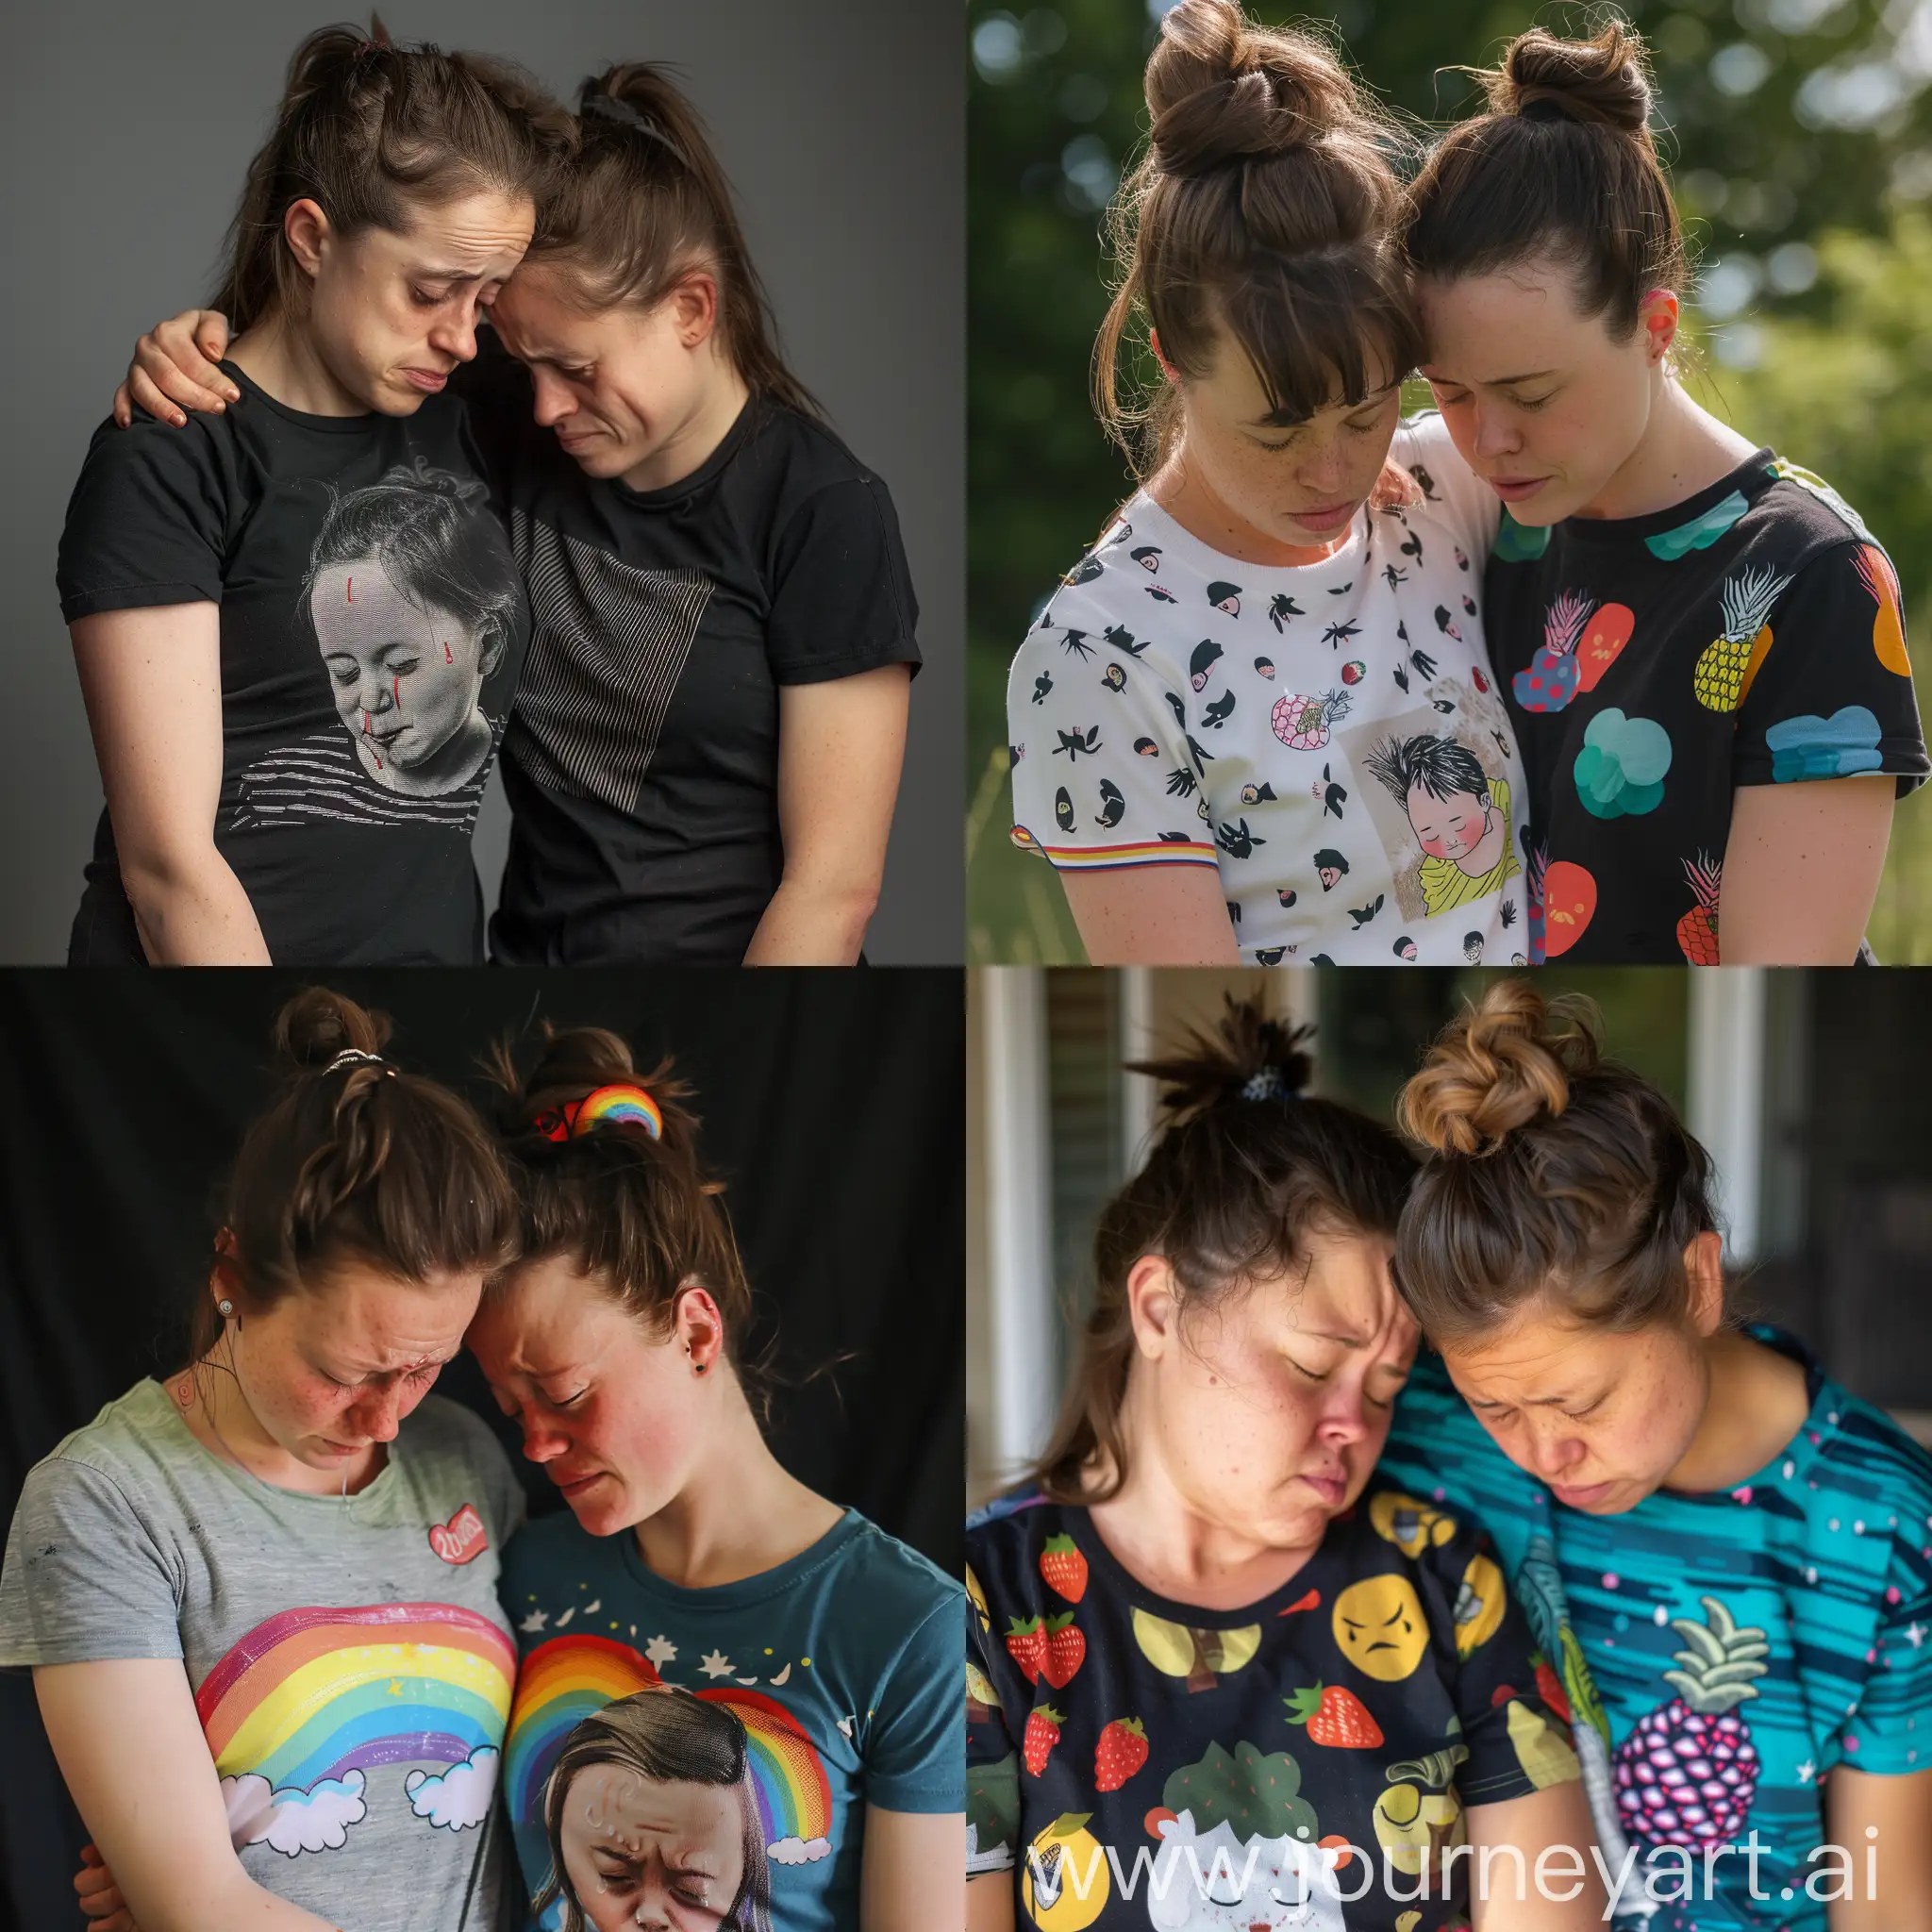 Deux lesbiennes de 21 ans syndrome de down t-shirt manches courtes femme beaucoup pleuré criée funeraill calin la tête dans les bras de sa femme